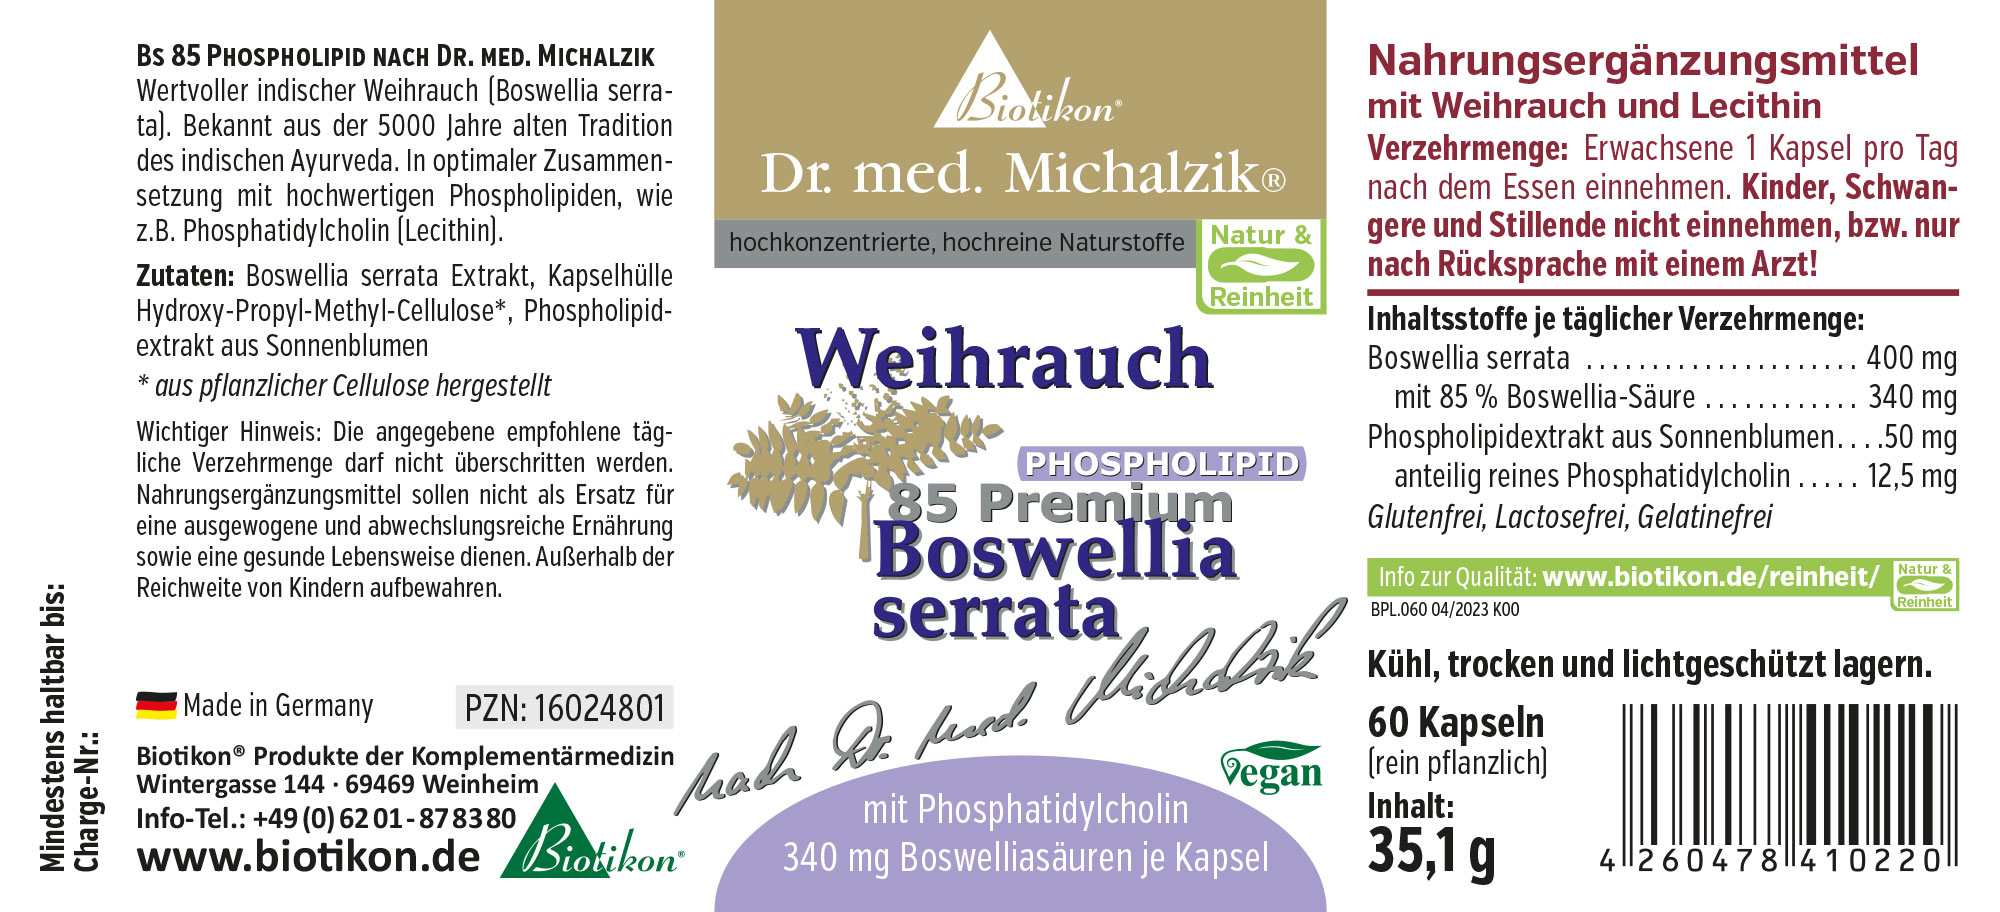 Weihrauch BS-85 Phospholipid